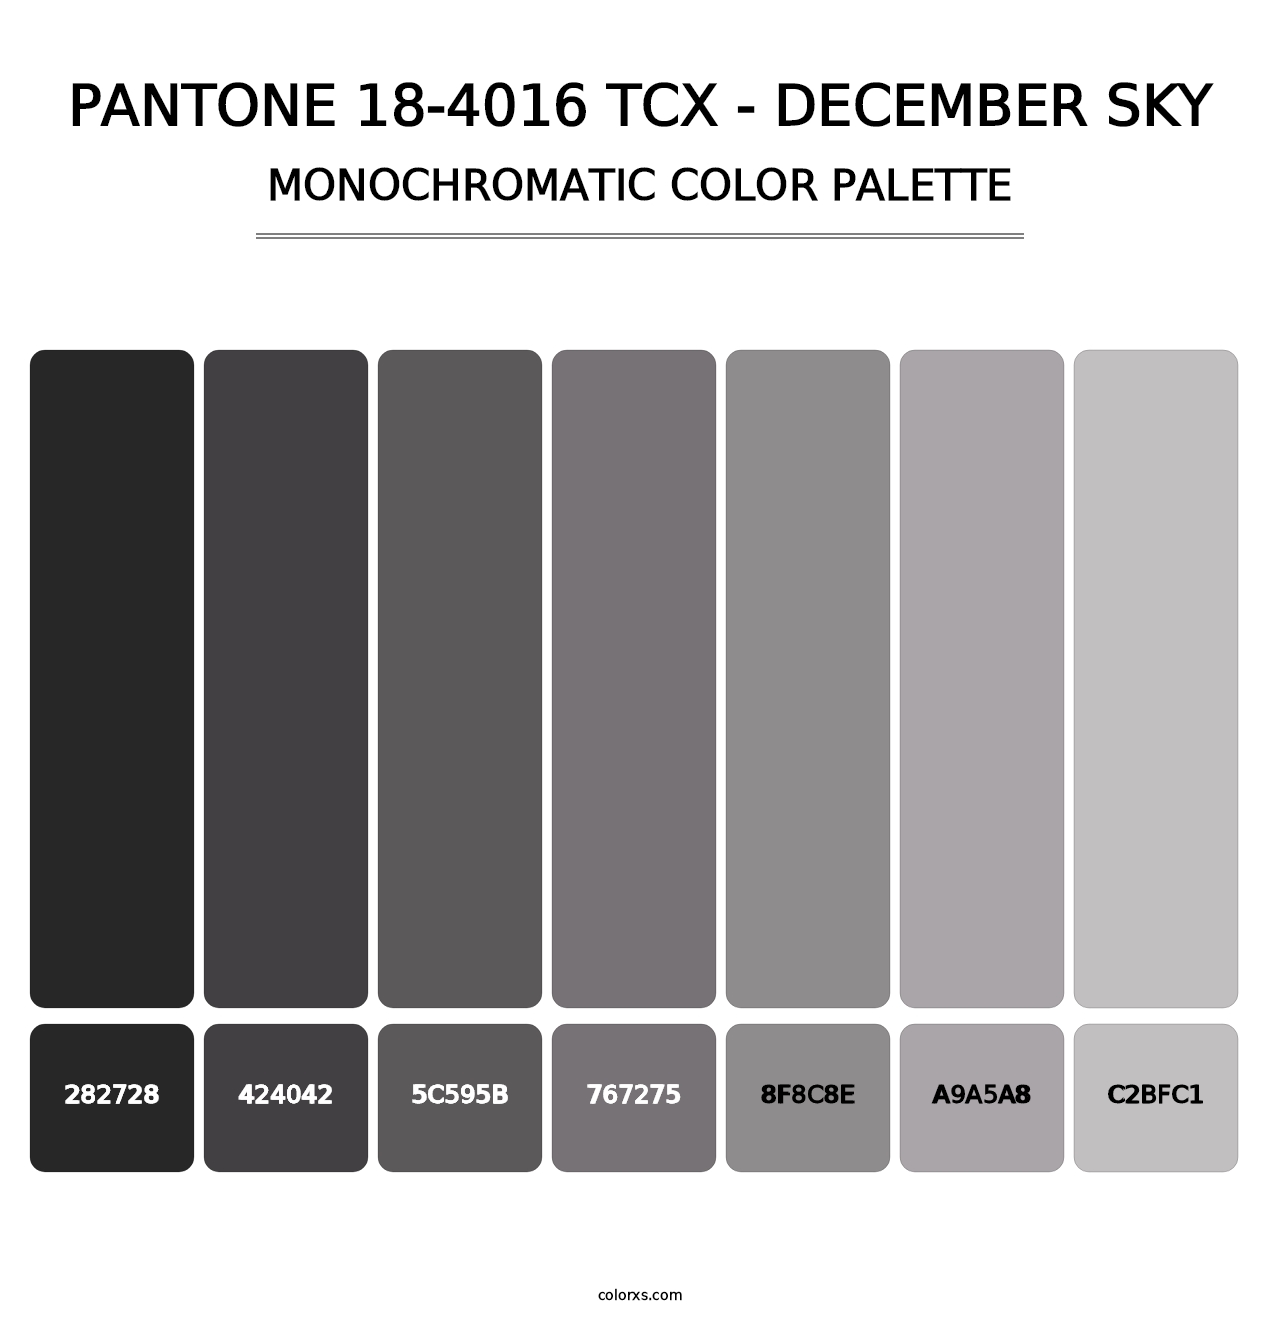 PANTONE 18-4016 TCX - December Sky - Monochromatic Color Palette